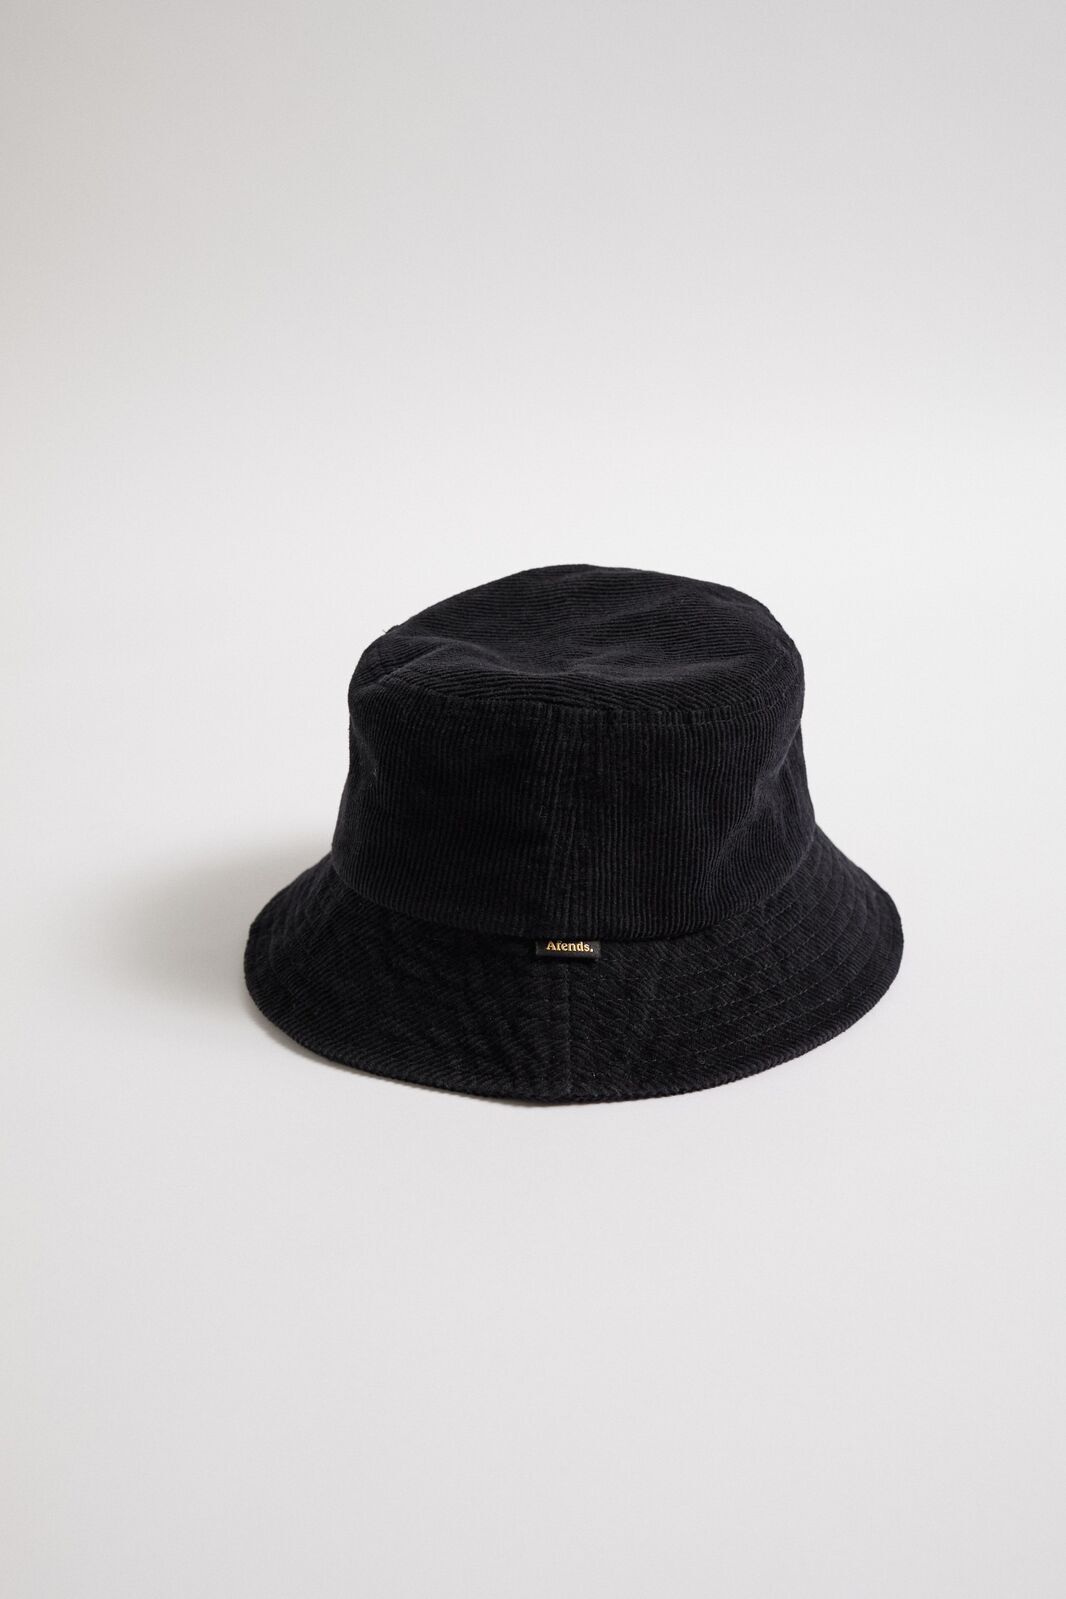 Hazel - Hemp Corduroy Bucket Hat - Raven - OS